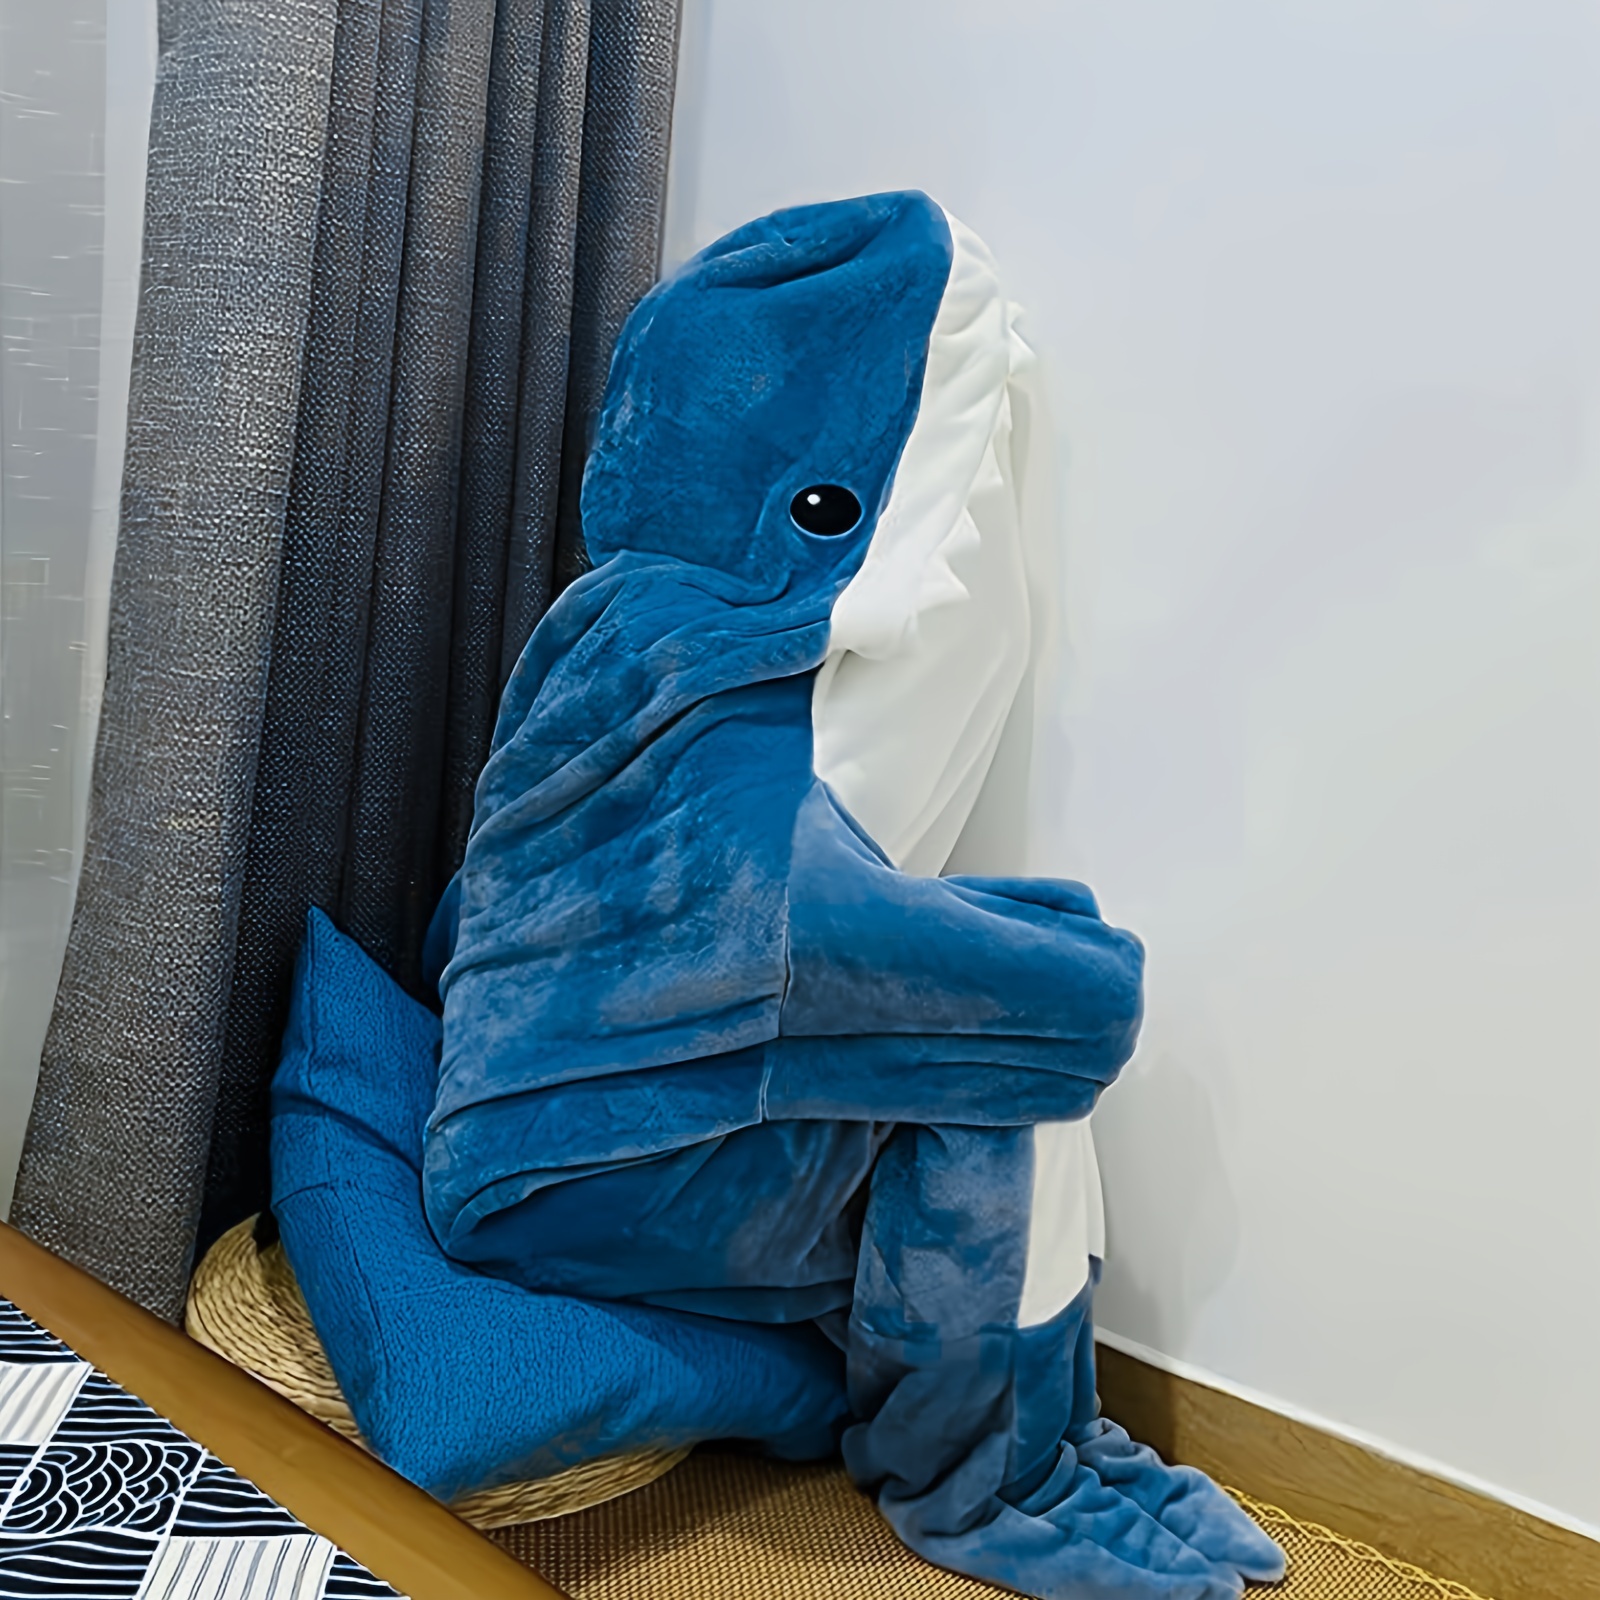 Manta de tiburón con capucha para adultos, manta de franela súper suave y  acogedora manta de tiburón con capucha (azul, S)